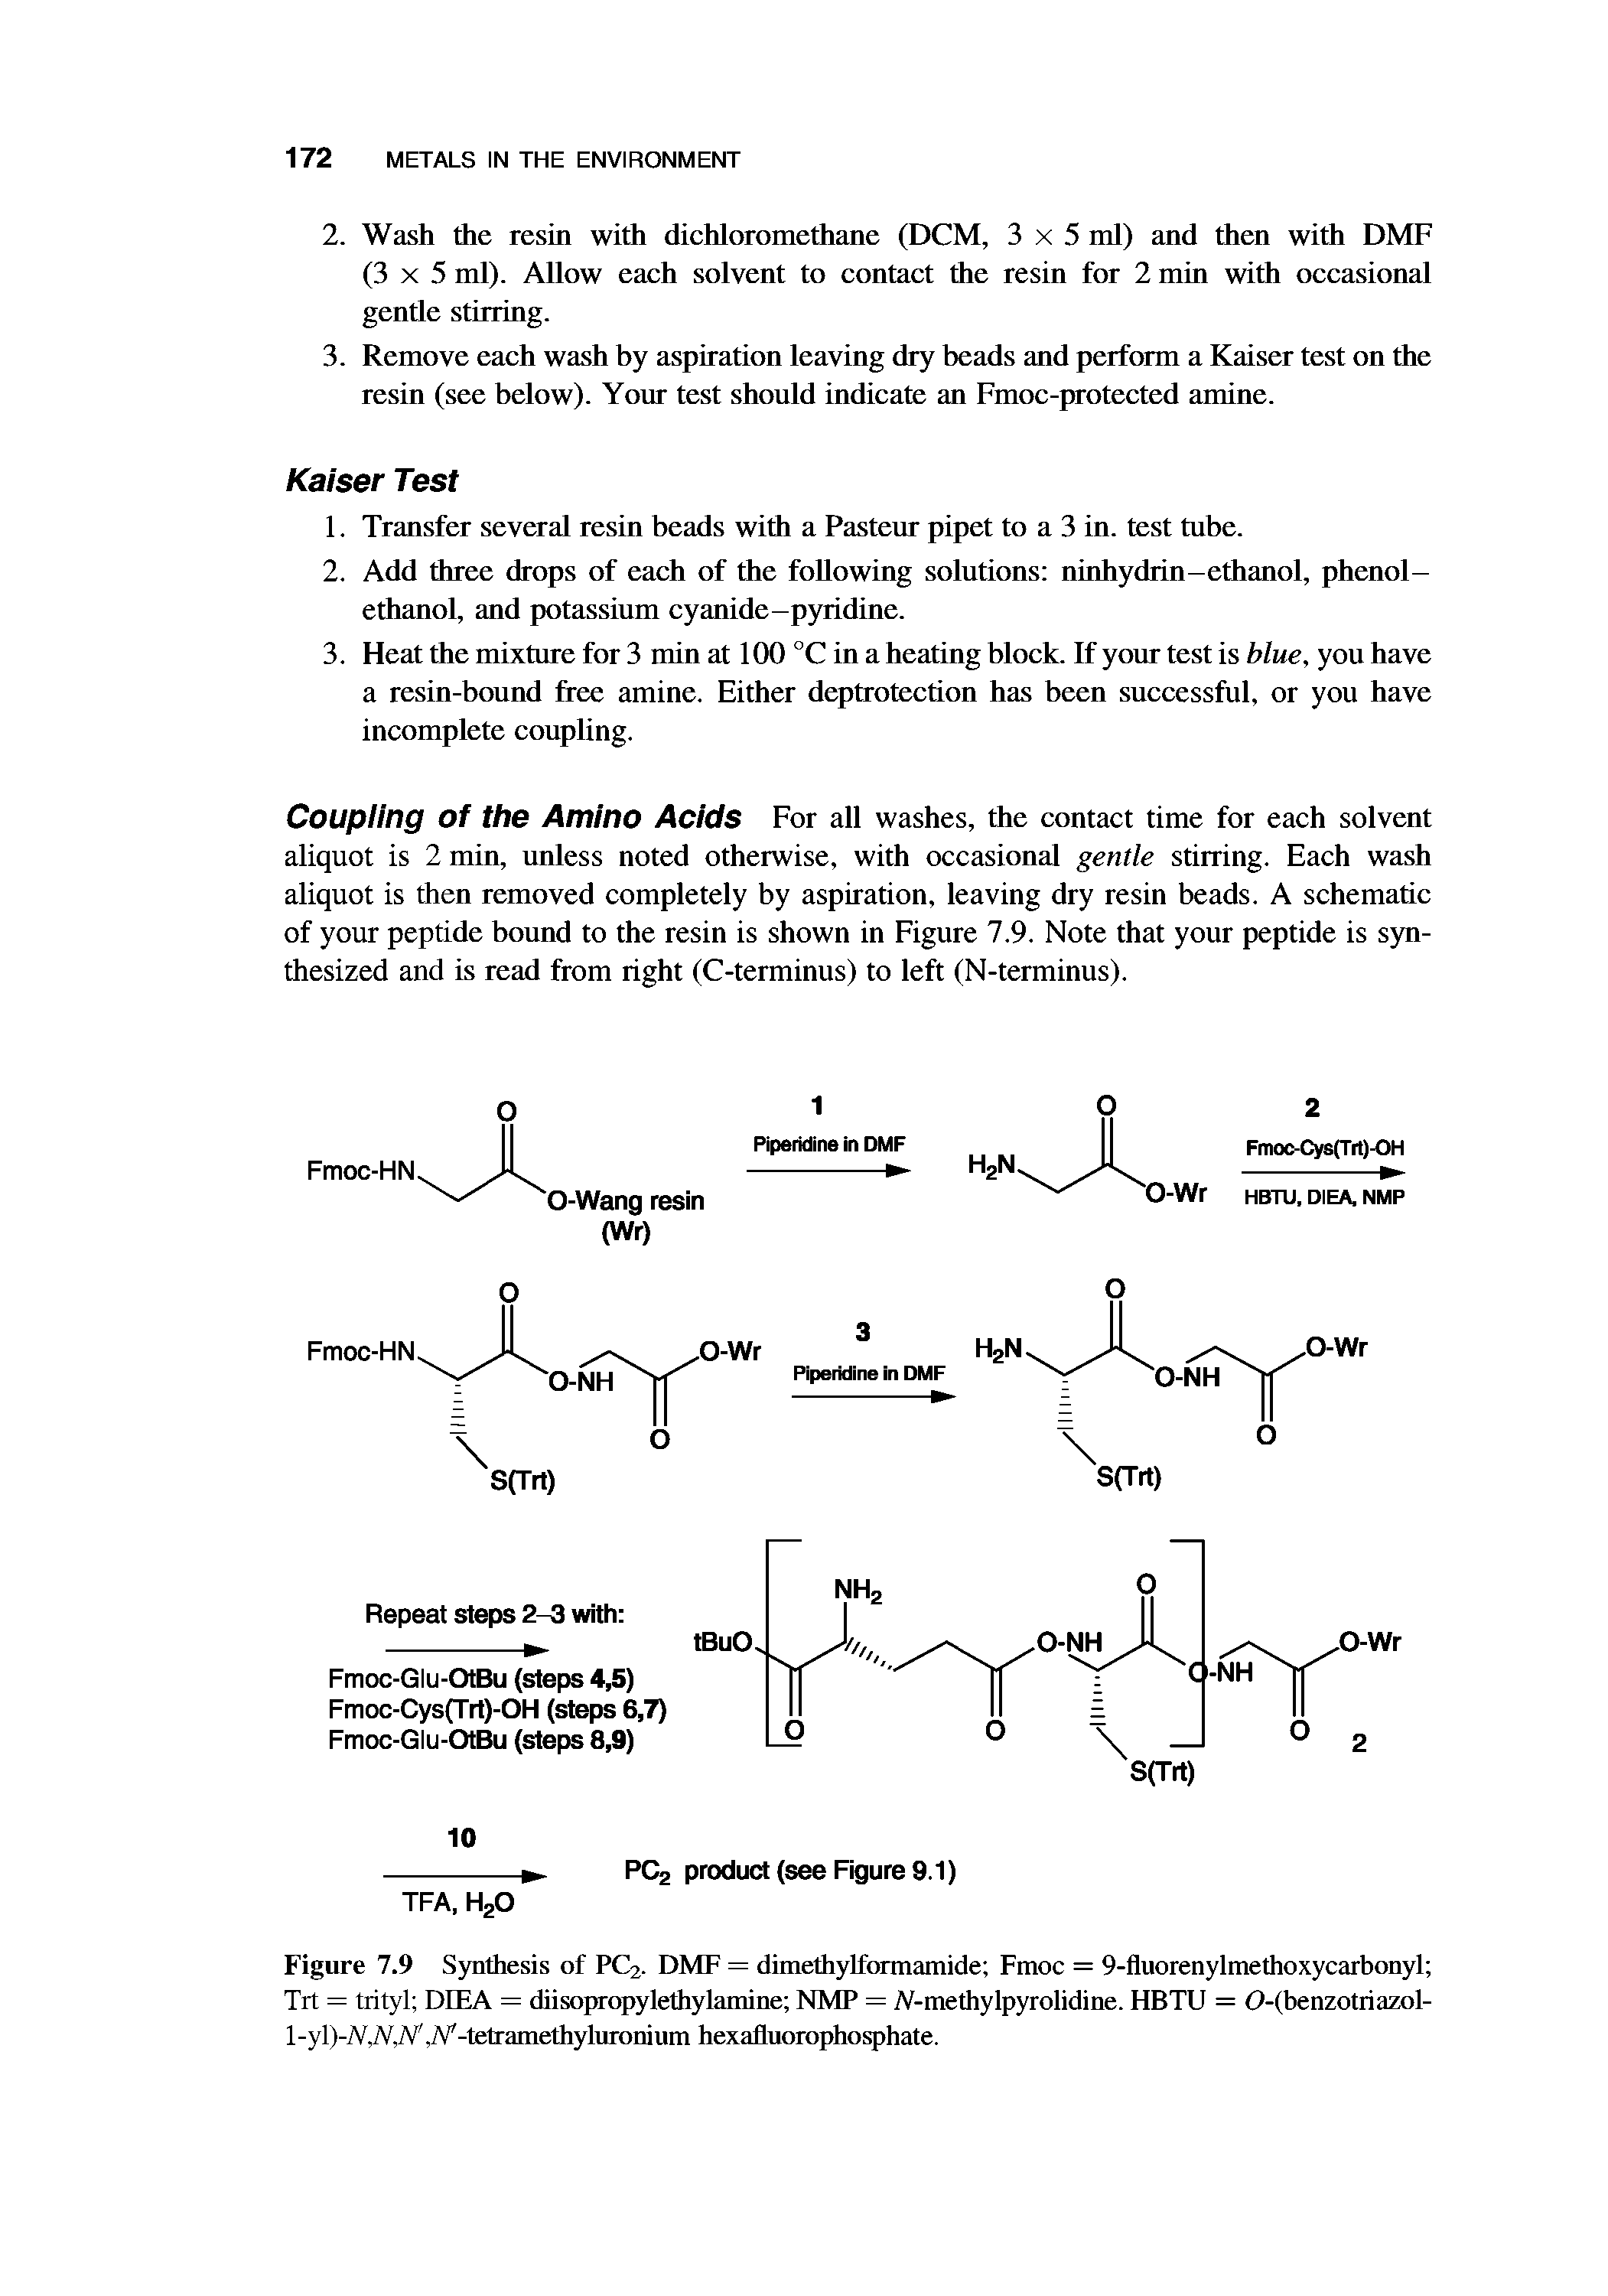 Figure 7.9 Synthesis of PC2. DMF = dimethylformamide Fmoc = 9-fluorenylmethoxycarbonyl Tit = trityl DEEA = diisopropylethylamine NMP = /V-methylpyrolidine. HBTU = 0-(benzotriazol-l-yl)-/V./V./V. /V,-tetramethyluronium hexafluorophosphate.